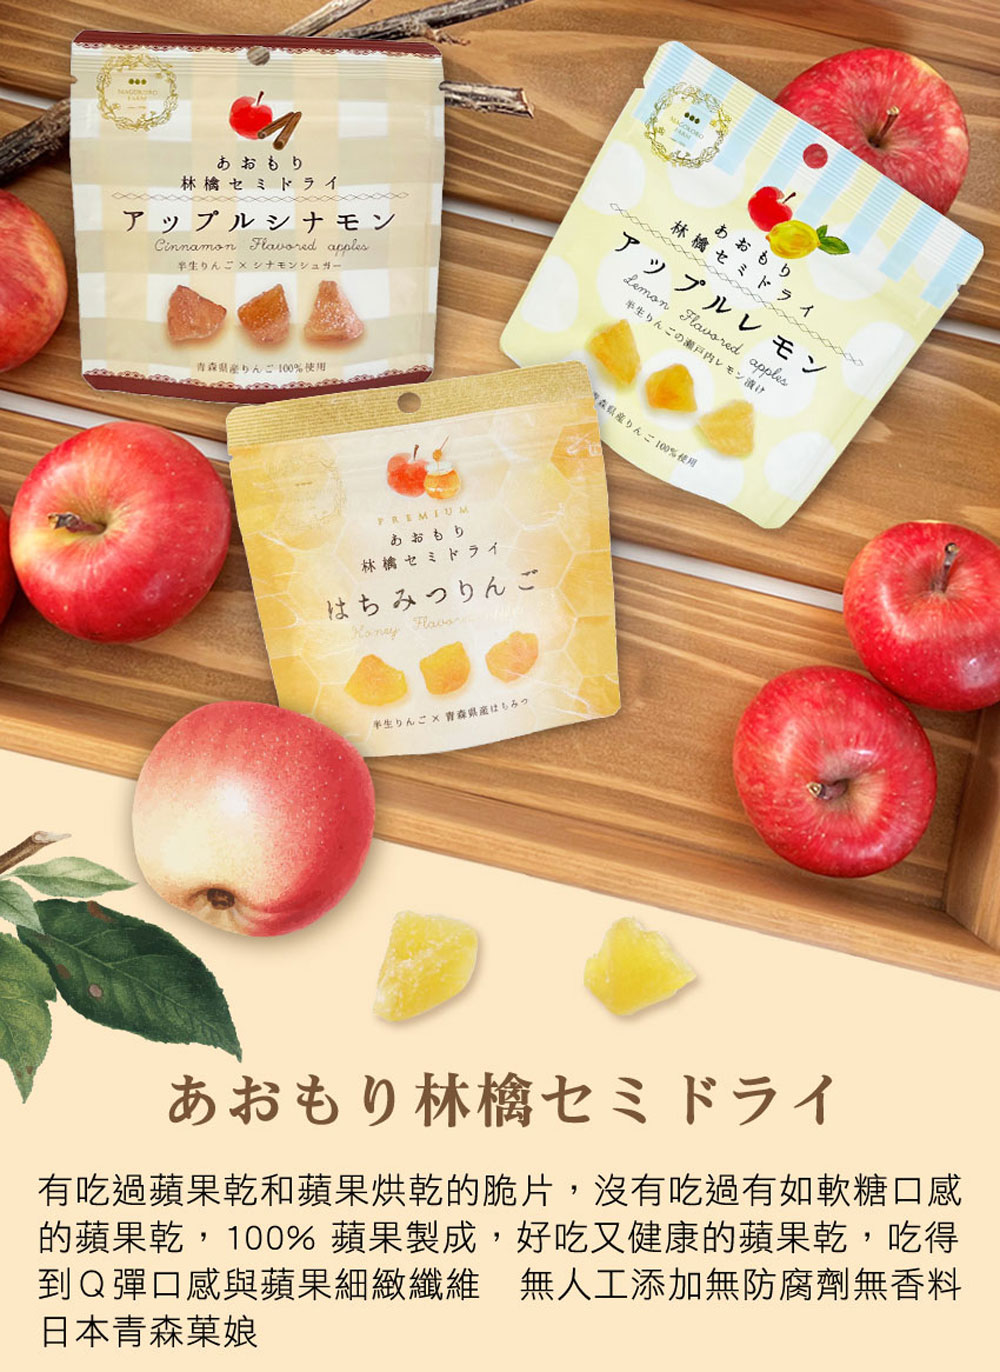 好味坊 青森菓娘-檸檬蘋果乾35g-3入組(真心農場/無添加